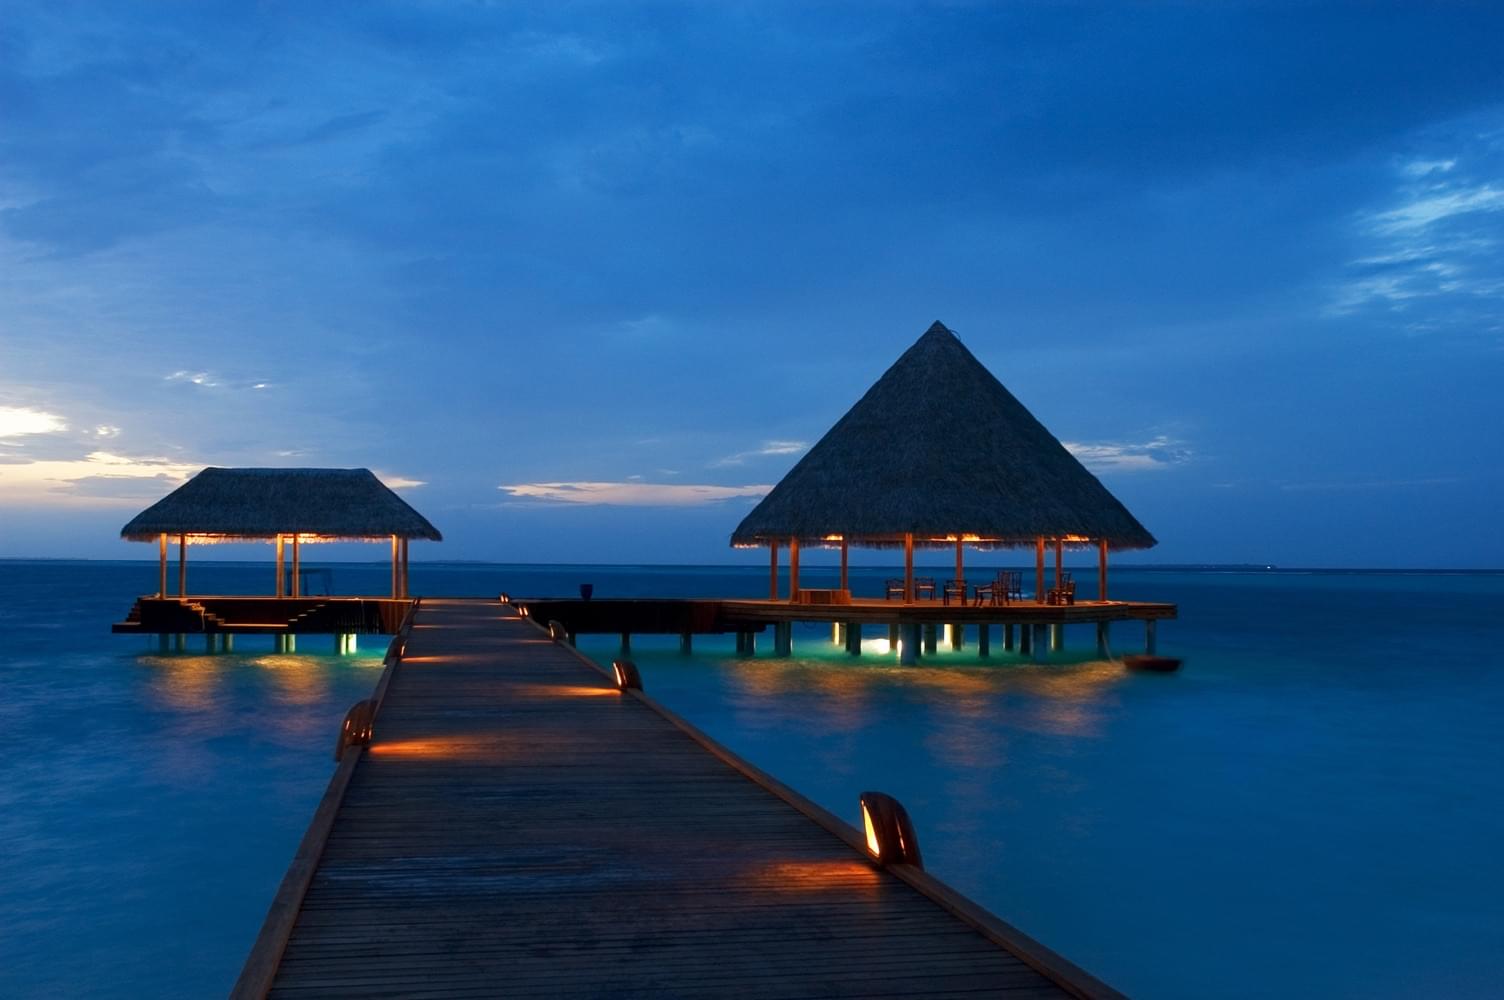 马尔代夫的海岛度假村小茅屋与椰子树风景图片-千叶网